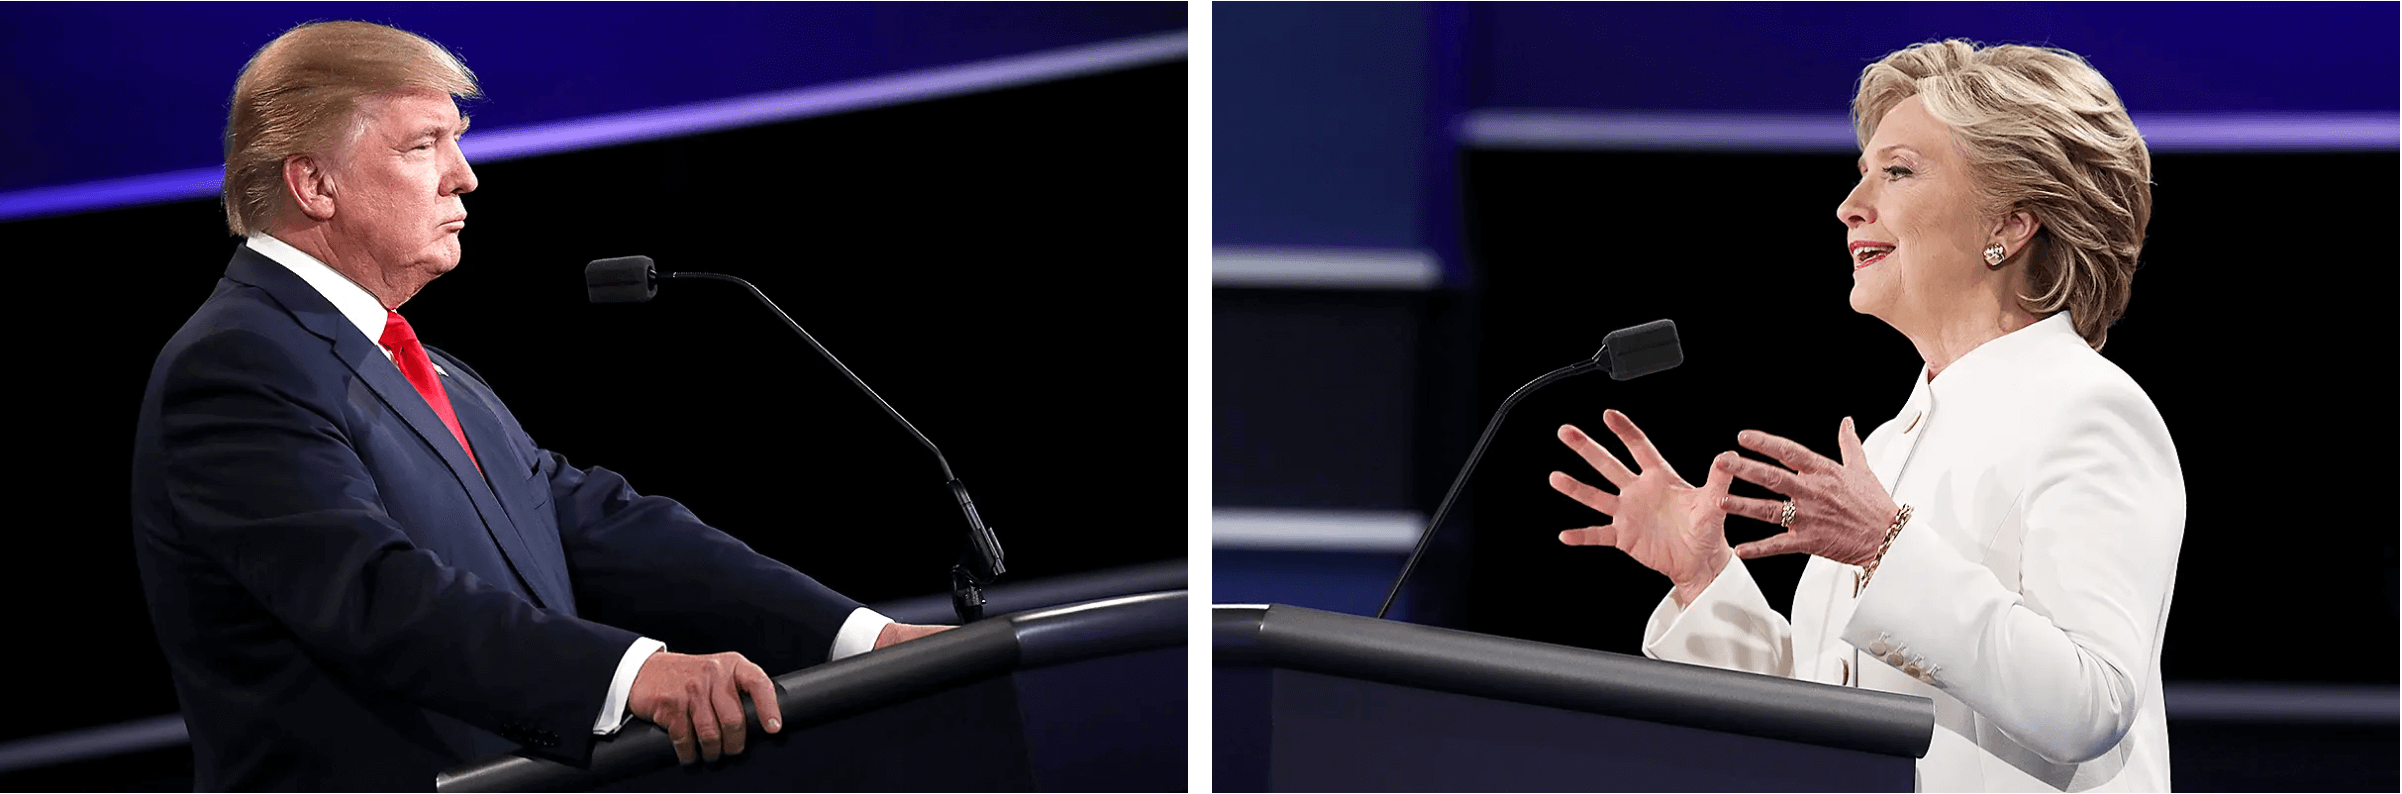 Ông Donald Trump, ứng cử viên tổng thống của Đảng Cộng Hòa, (trái) và ứng cử viên tổng thống của Đảng Dân Chủ, cựu Ngoại trưởng Hillary Clinton, trong cuộc tranh biện tổng thống cuối cùng ở Las Vegas vào ngày 19/10/2016. (Ảnh: Drew Angerer/Getty Images, Win McNamee/Getty Images)